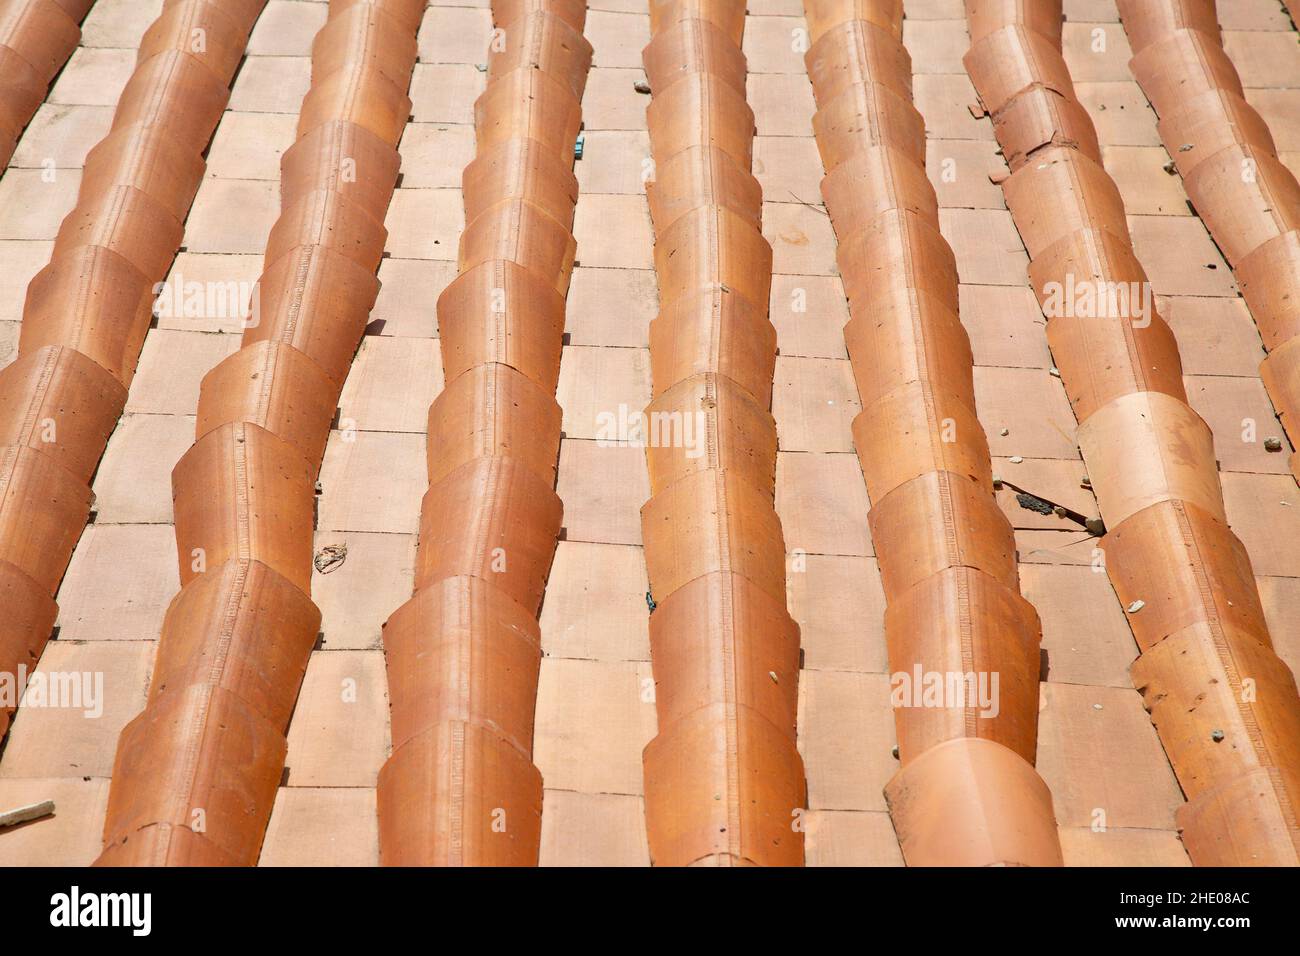 Modello del tetto con tegole arancioni. Giorno di sole. Tradizionale materiale per tetti. Sfondo e immagine di sfondo. Composizione geometrica. Costruzione storica Foto Stock